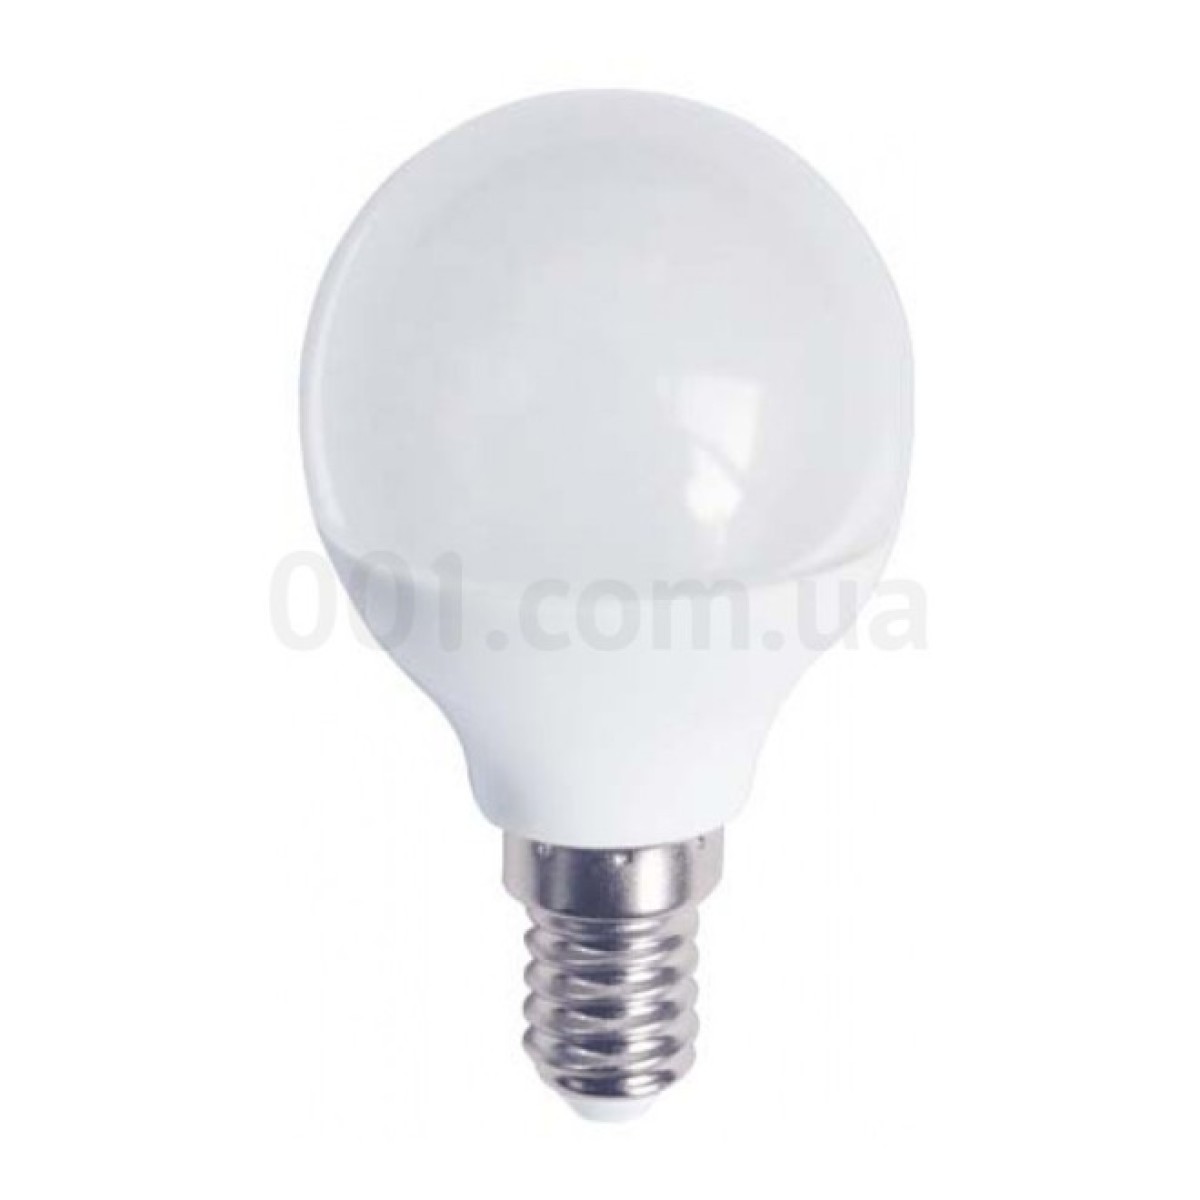 Світлодіодна лампа LB-745 P45 (куля) 6Вт 4000K E14, Feron 256_256.jpg